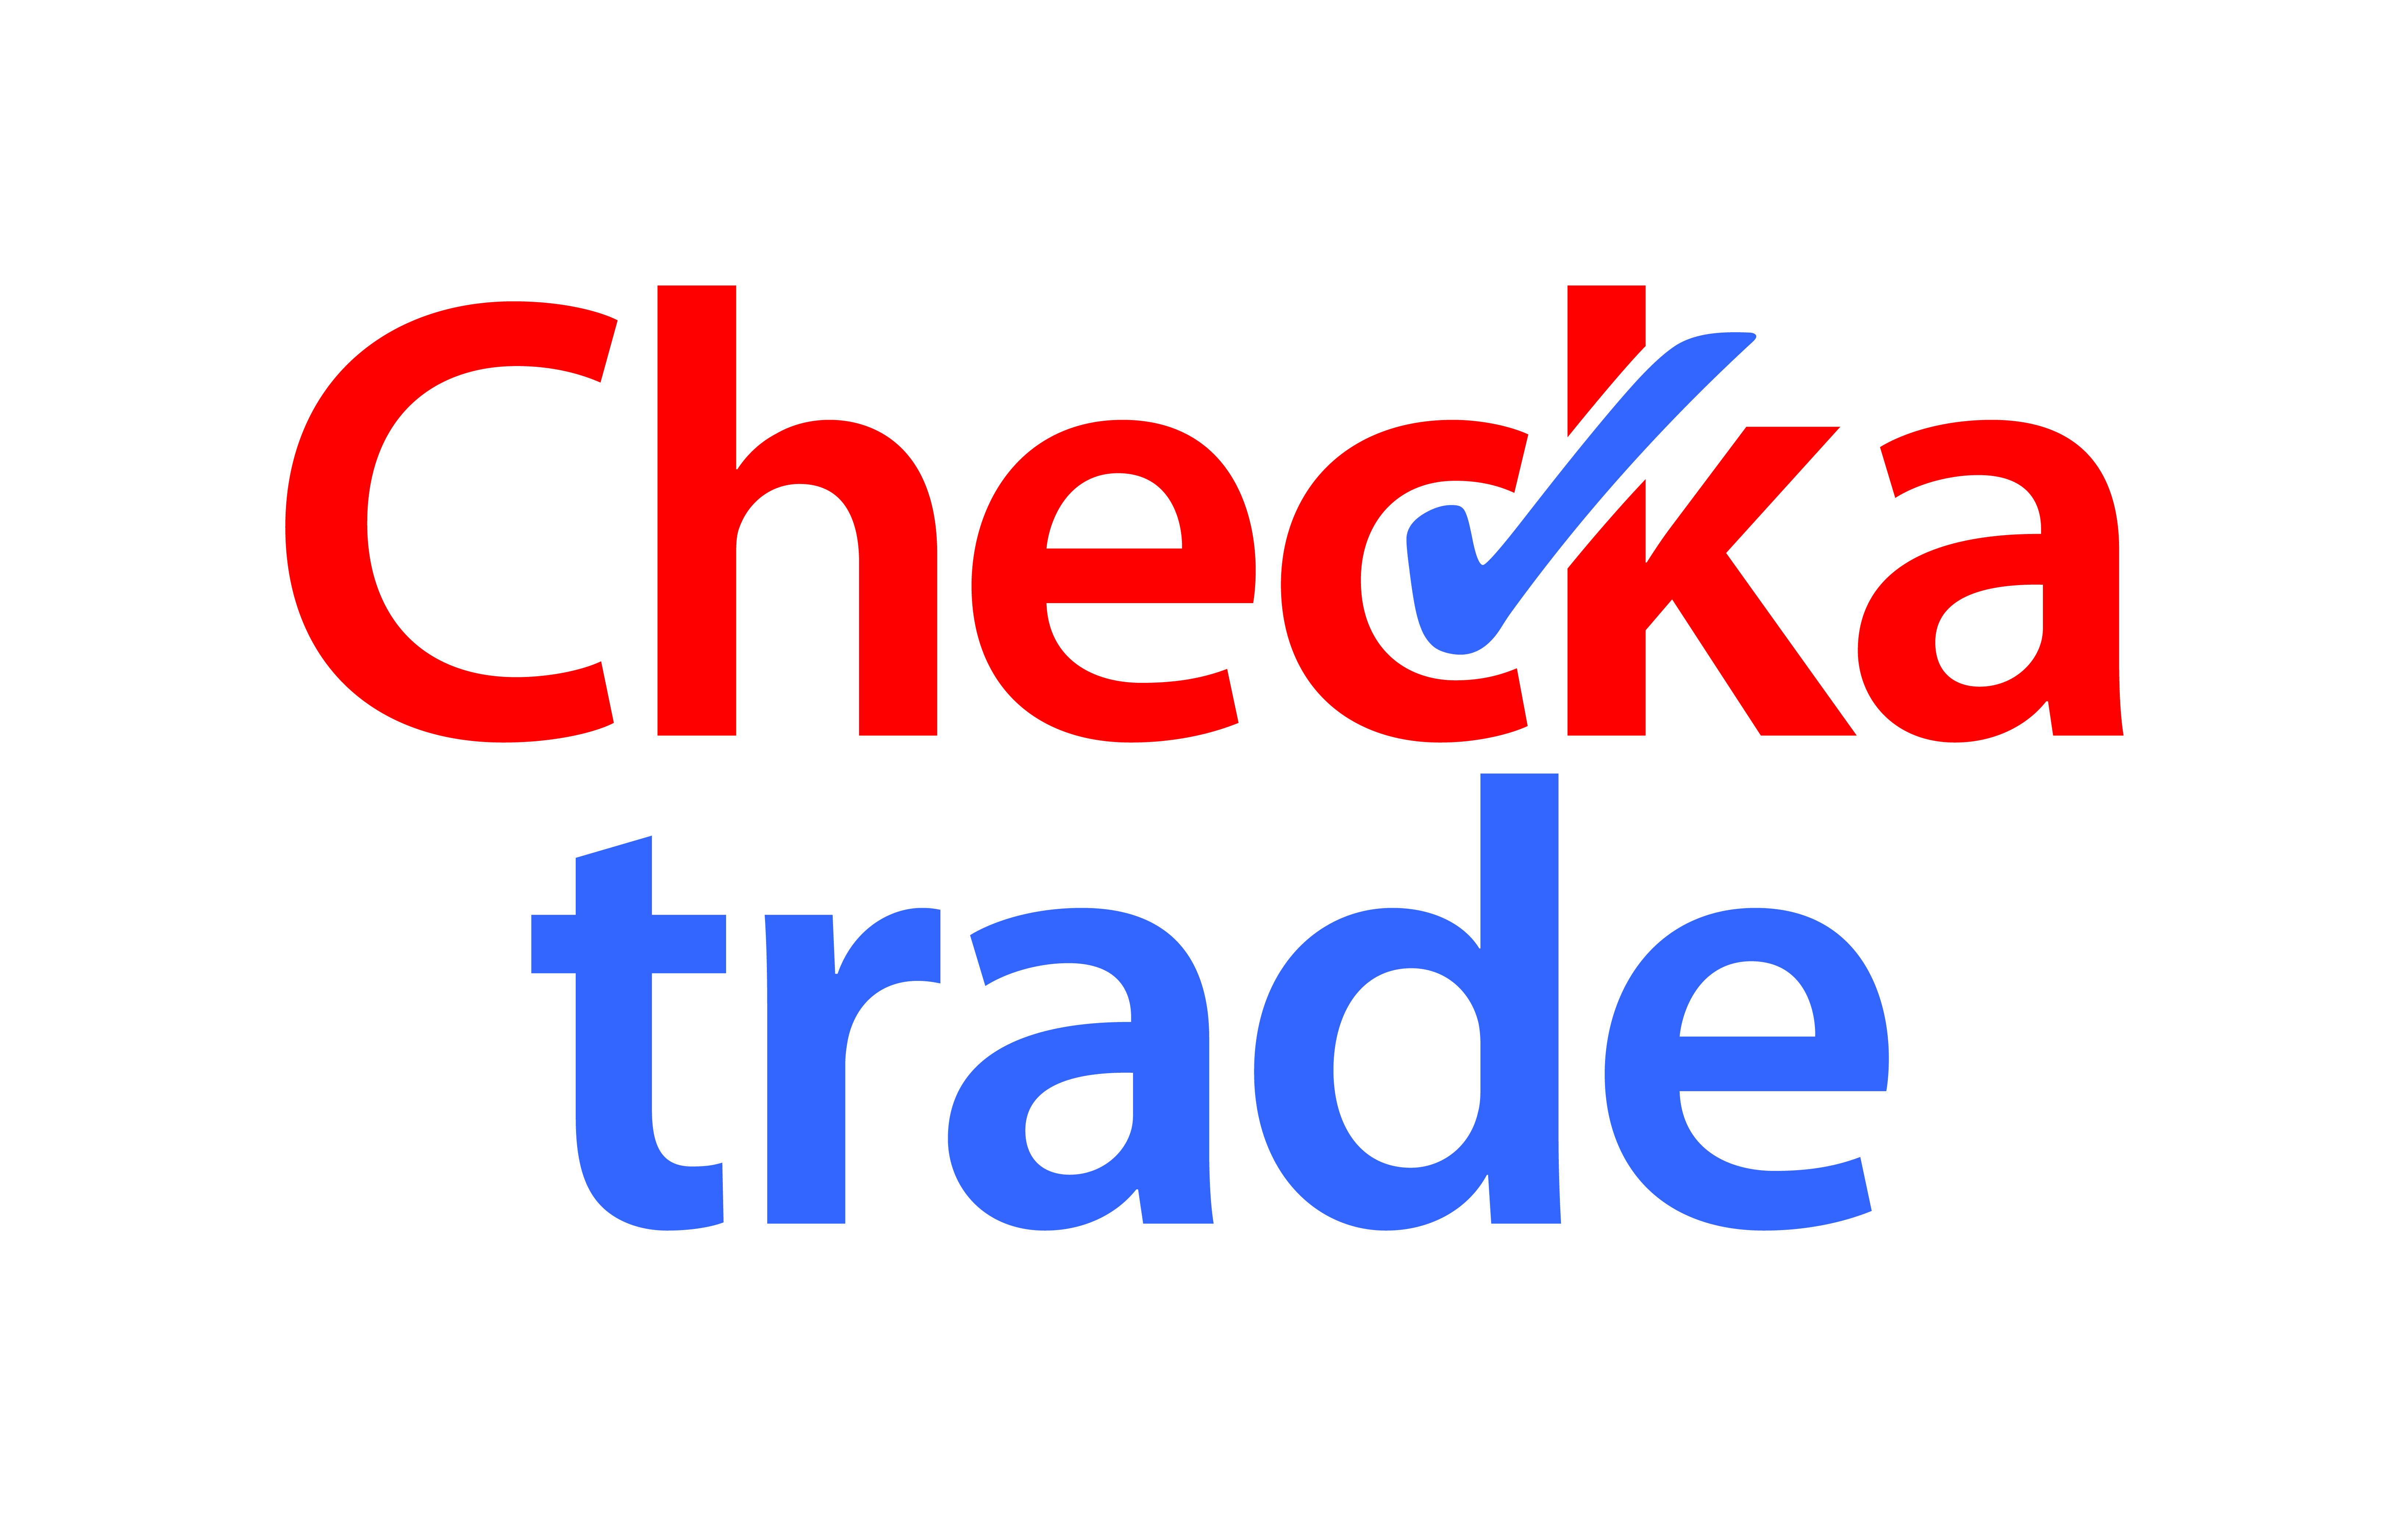 Checkatrade Stacked Logo